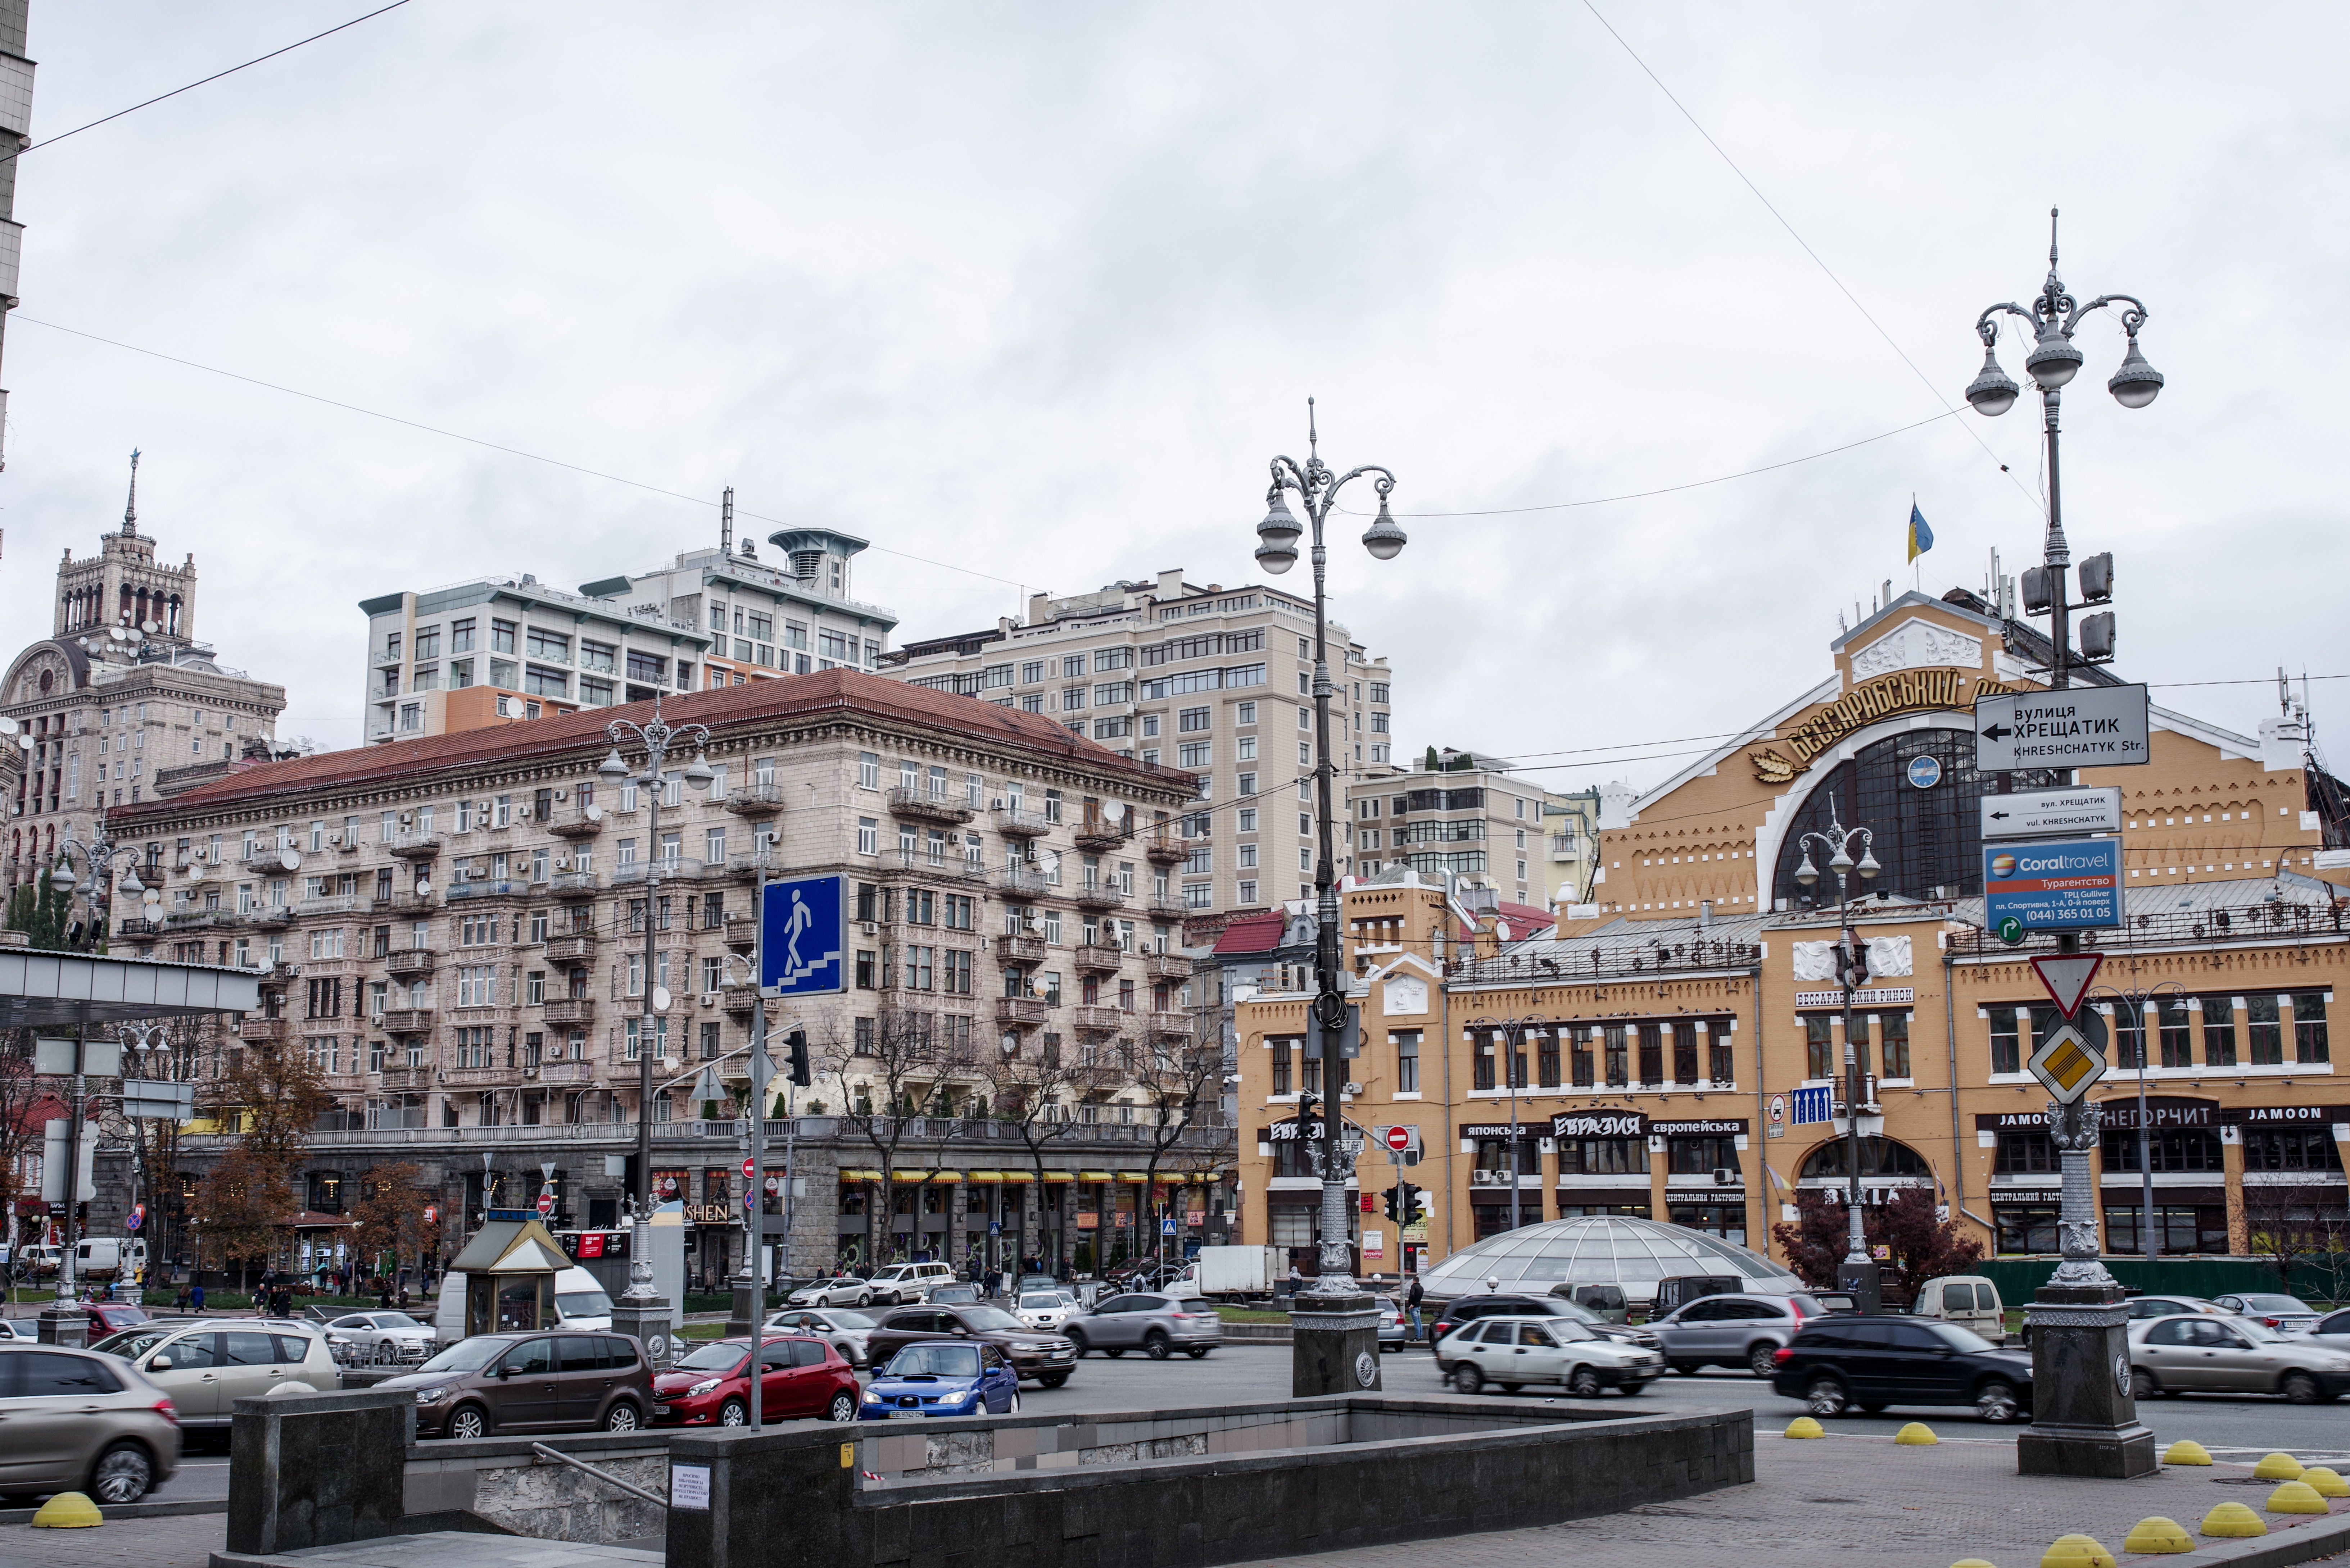 Kijevas – Ukrainos sostinė. Tai didžiausias milijoninis miestas, įsikūręs šiaurinėje šalies dalyje prie Dniepro upės bei septintas pagal dydį Europos žemyno miestas.V.Ščiavinsko nuotr.